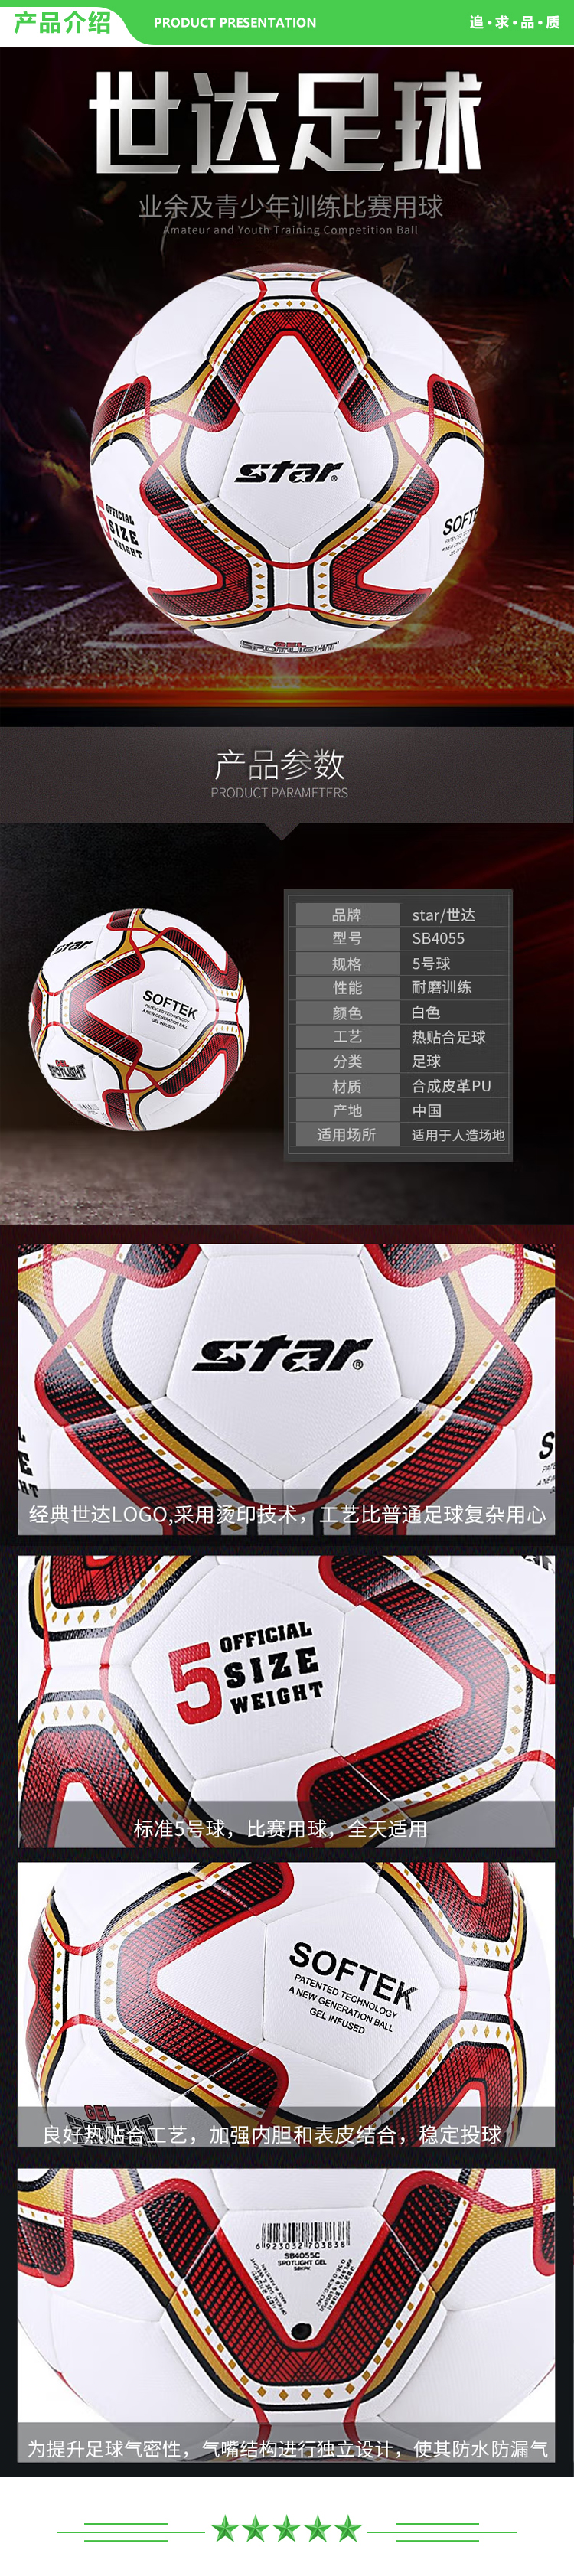 世达 star SB4055 足球标准5号球青少年训练球耐磨防水比赛用球  2.jpg